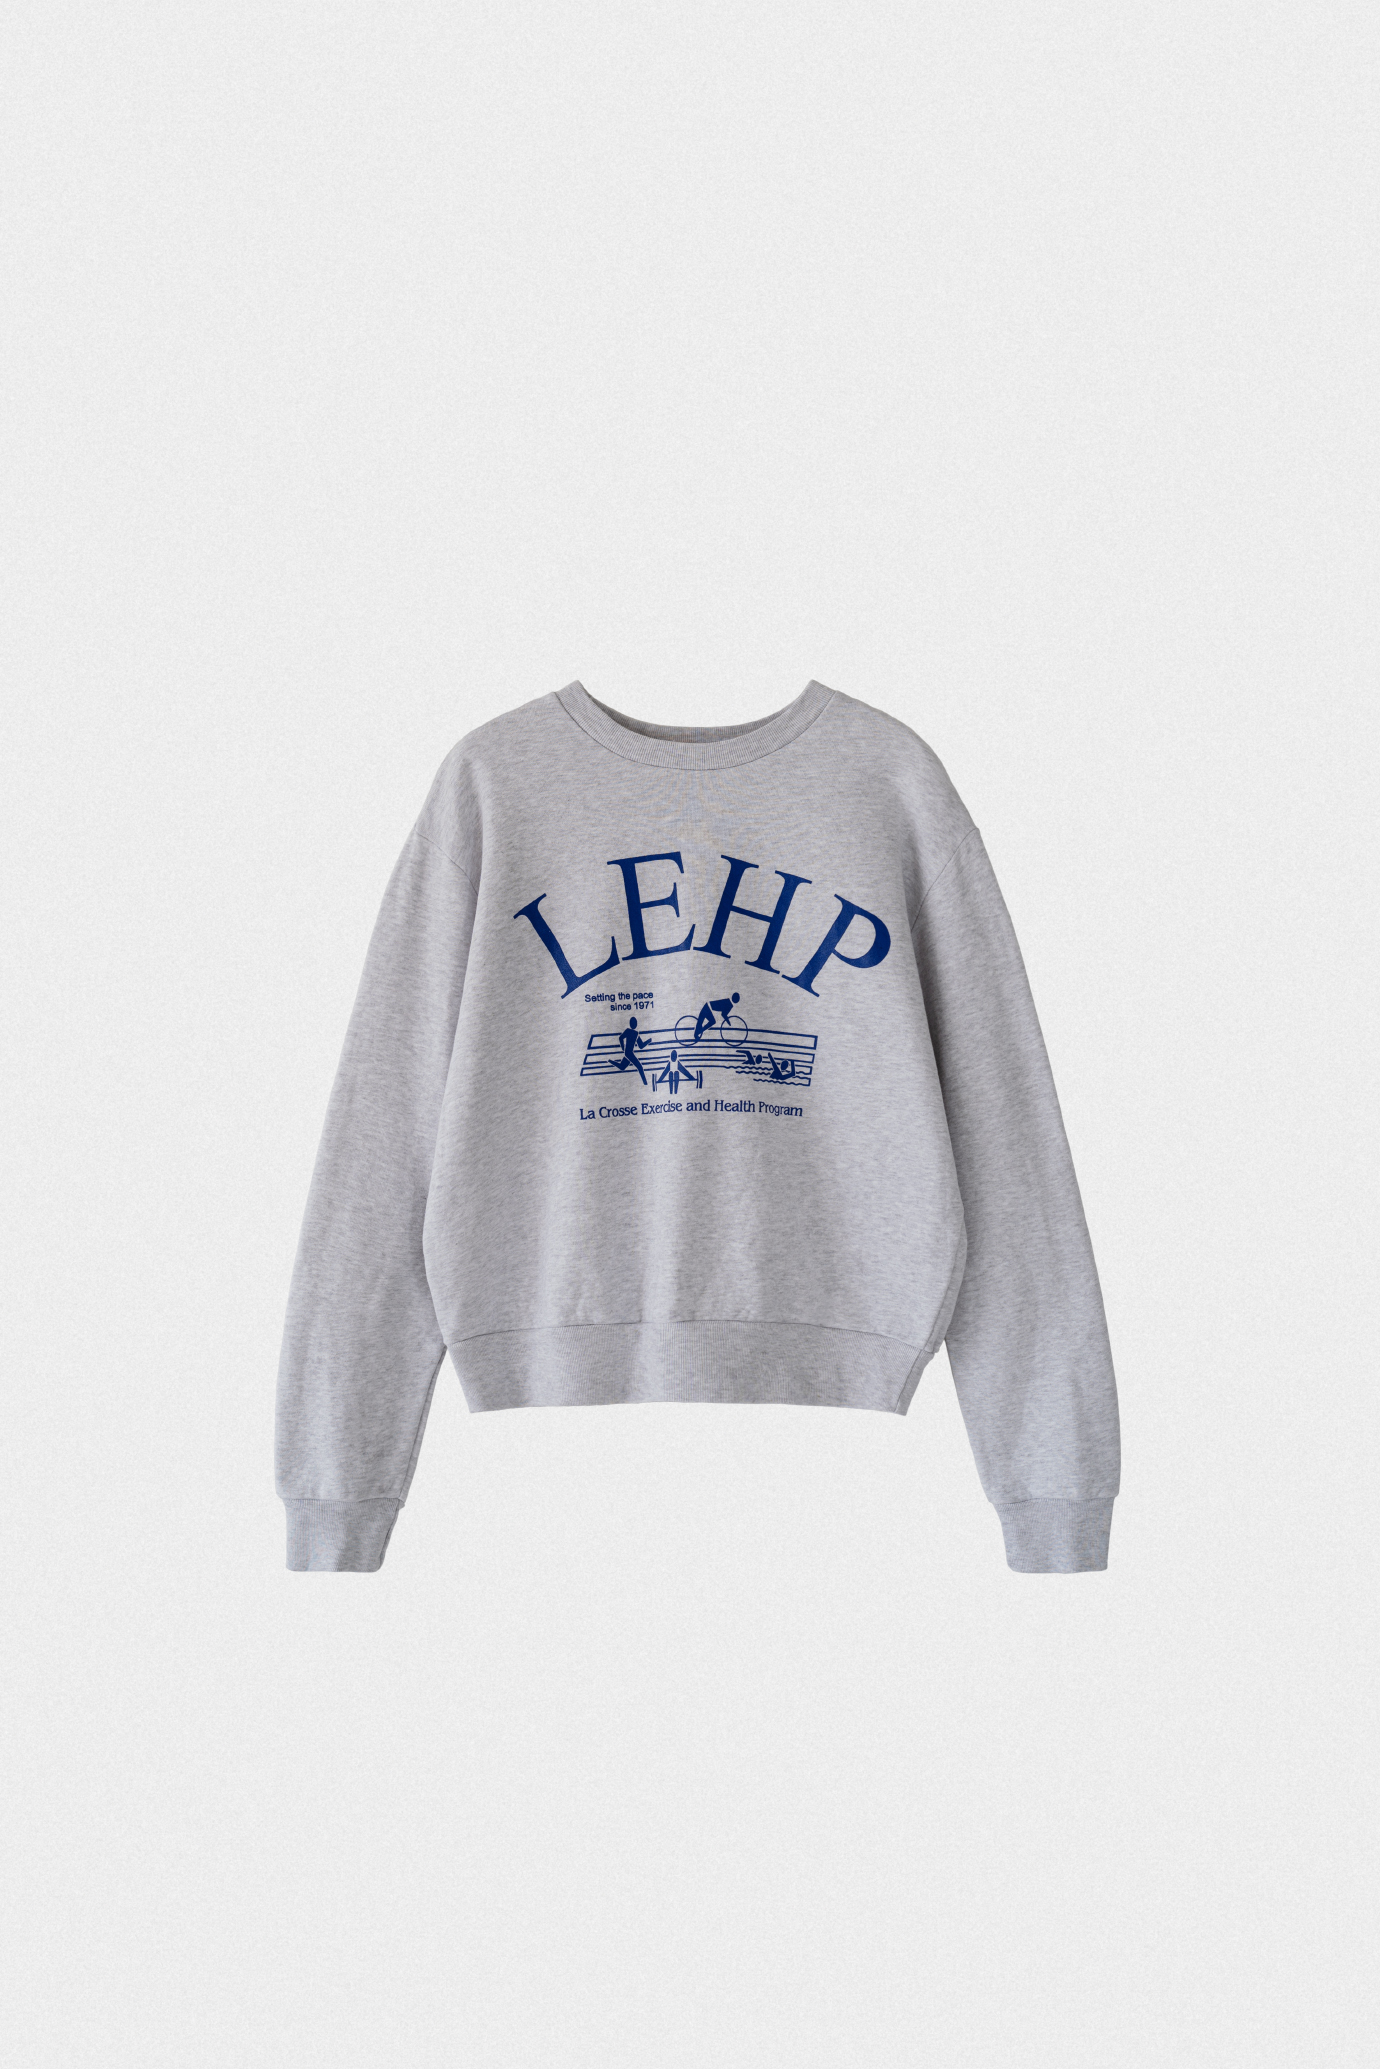 19790_LEHP sweatshirt